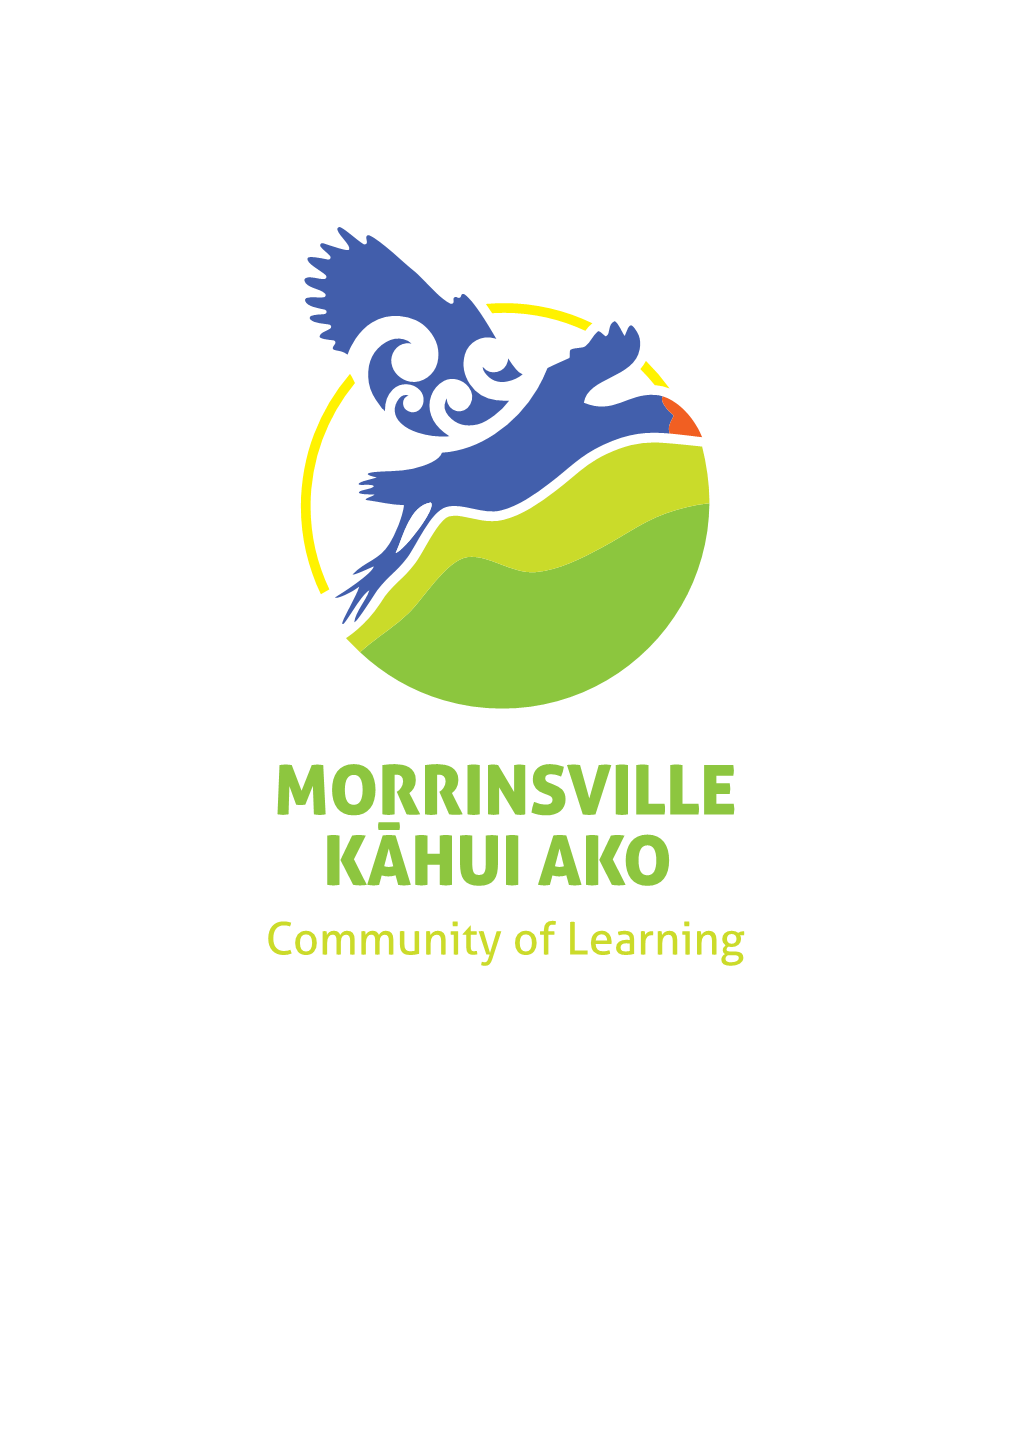 Morrinsville Kāhui